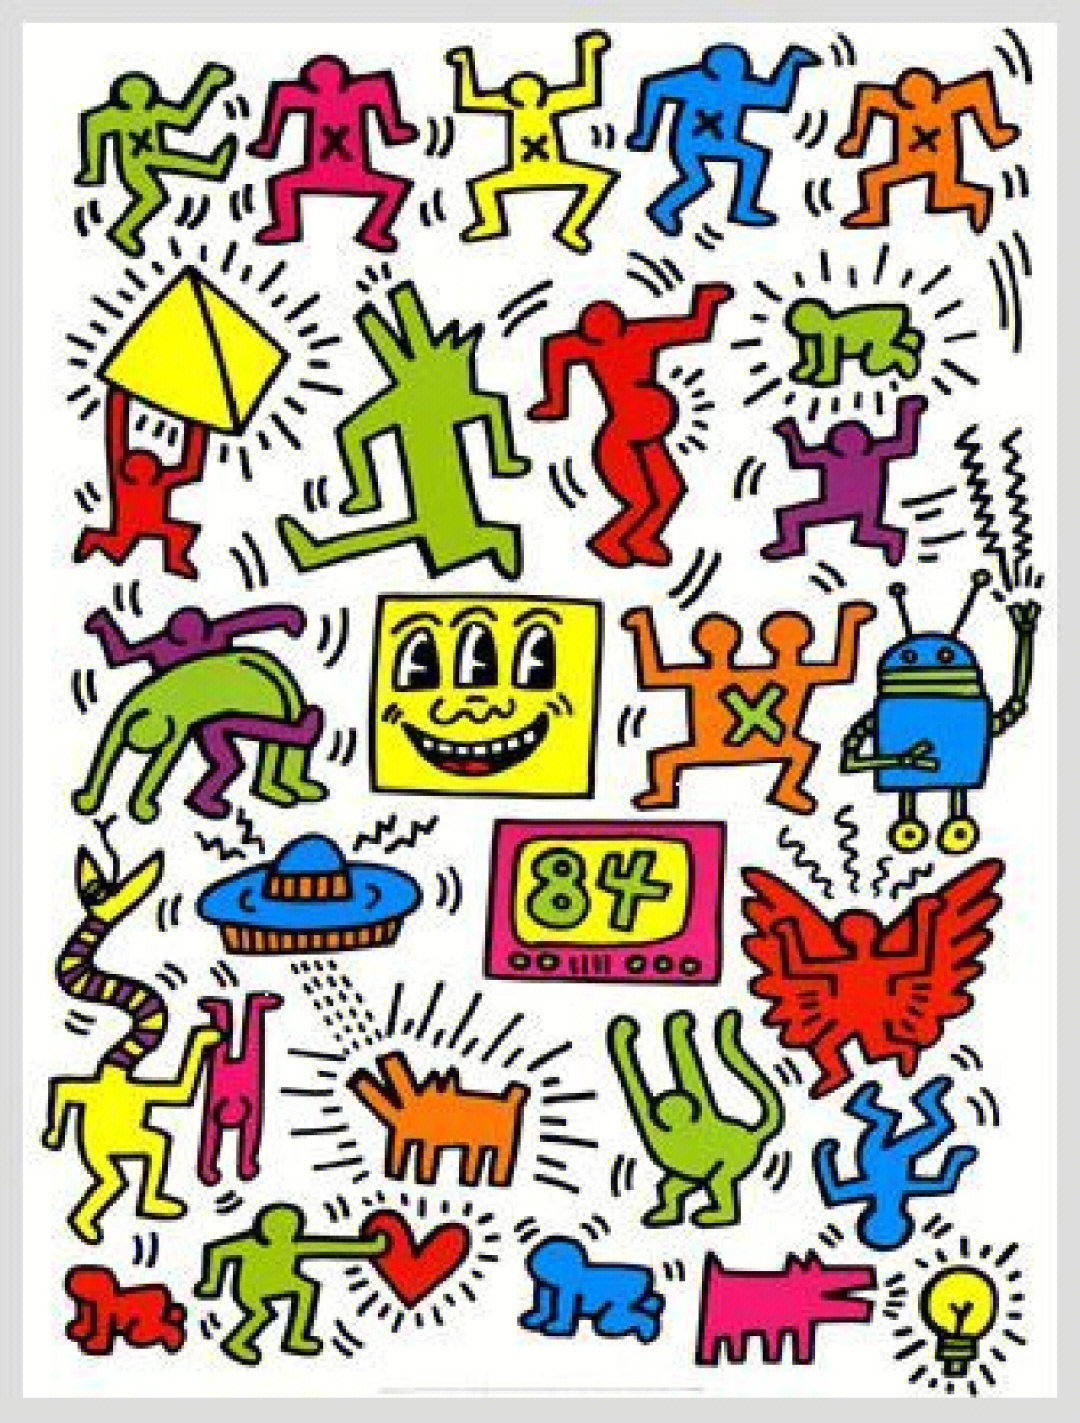 凯斯·哈林keith haring是1980年代,美国街头绘画艺术家和社会运动者